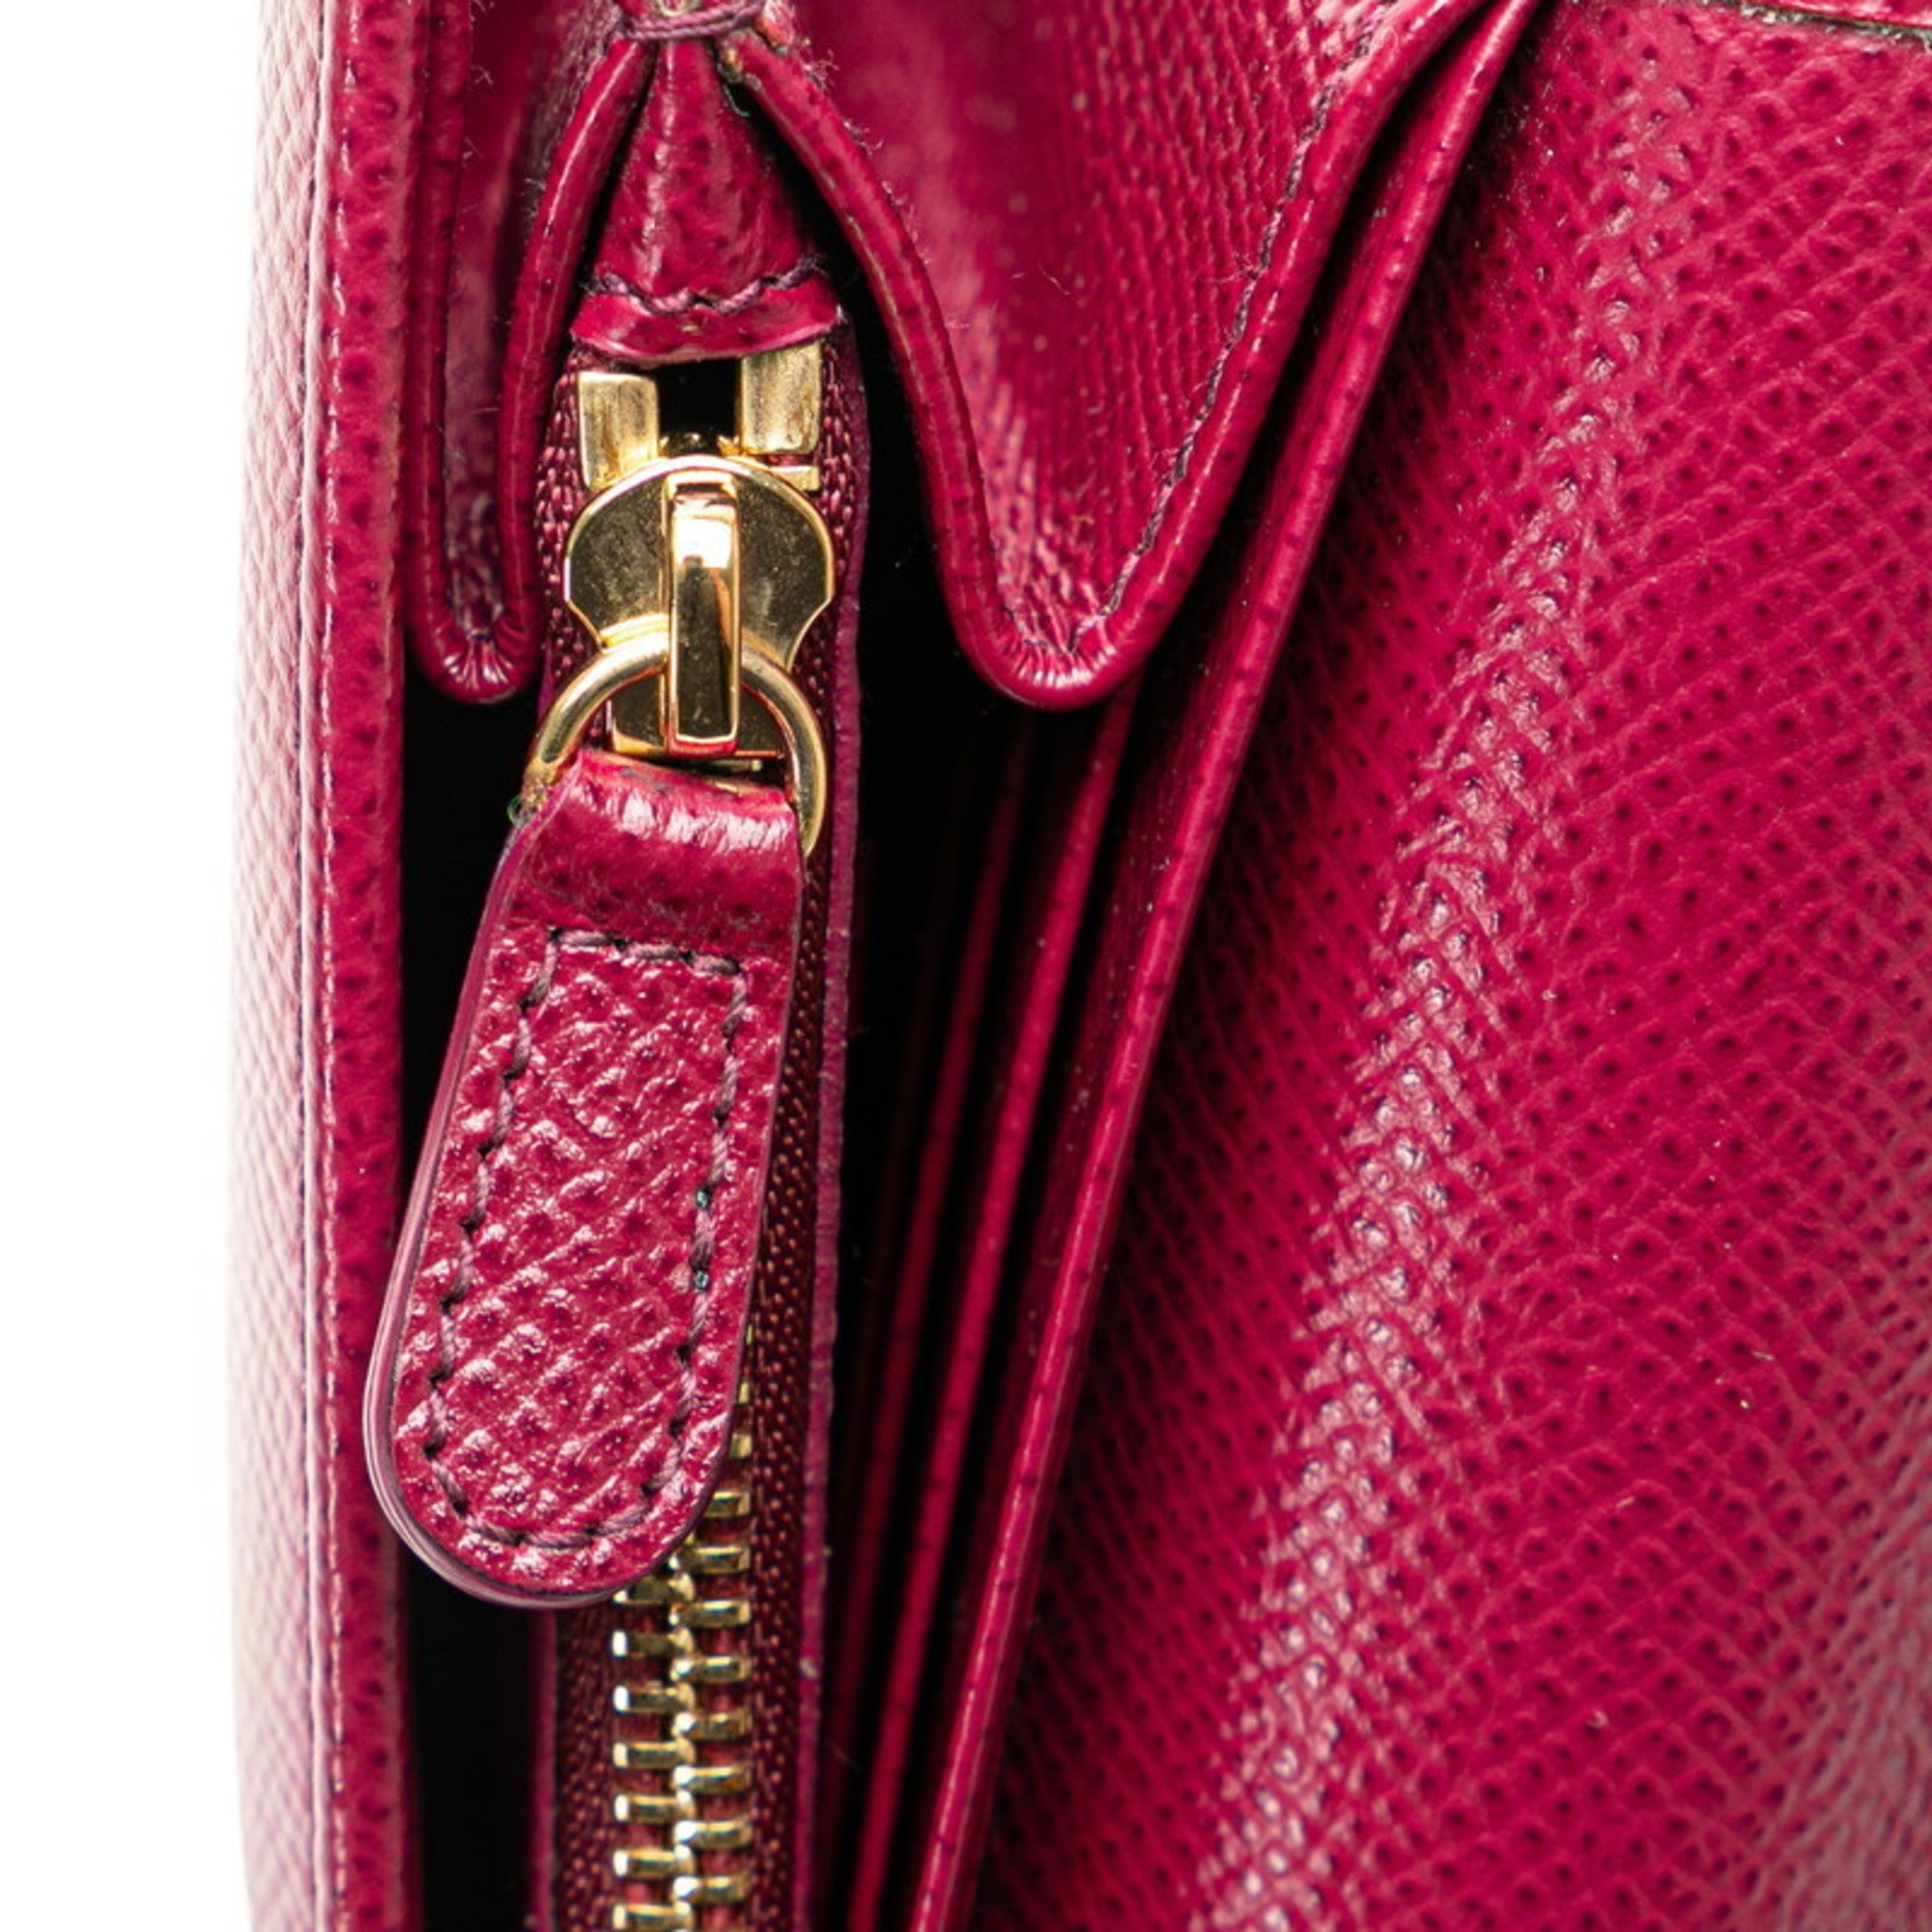 Salvatore Ferragamo Gancini Long Wallet JP-22 D150 Wine Red Leather Women's